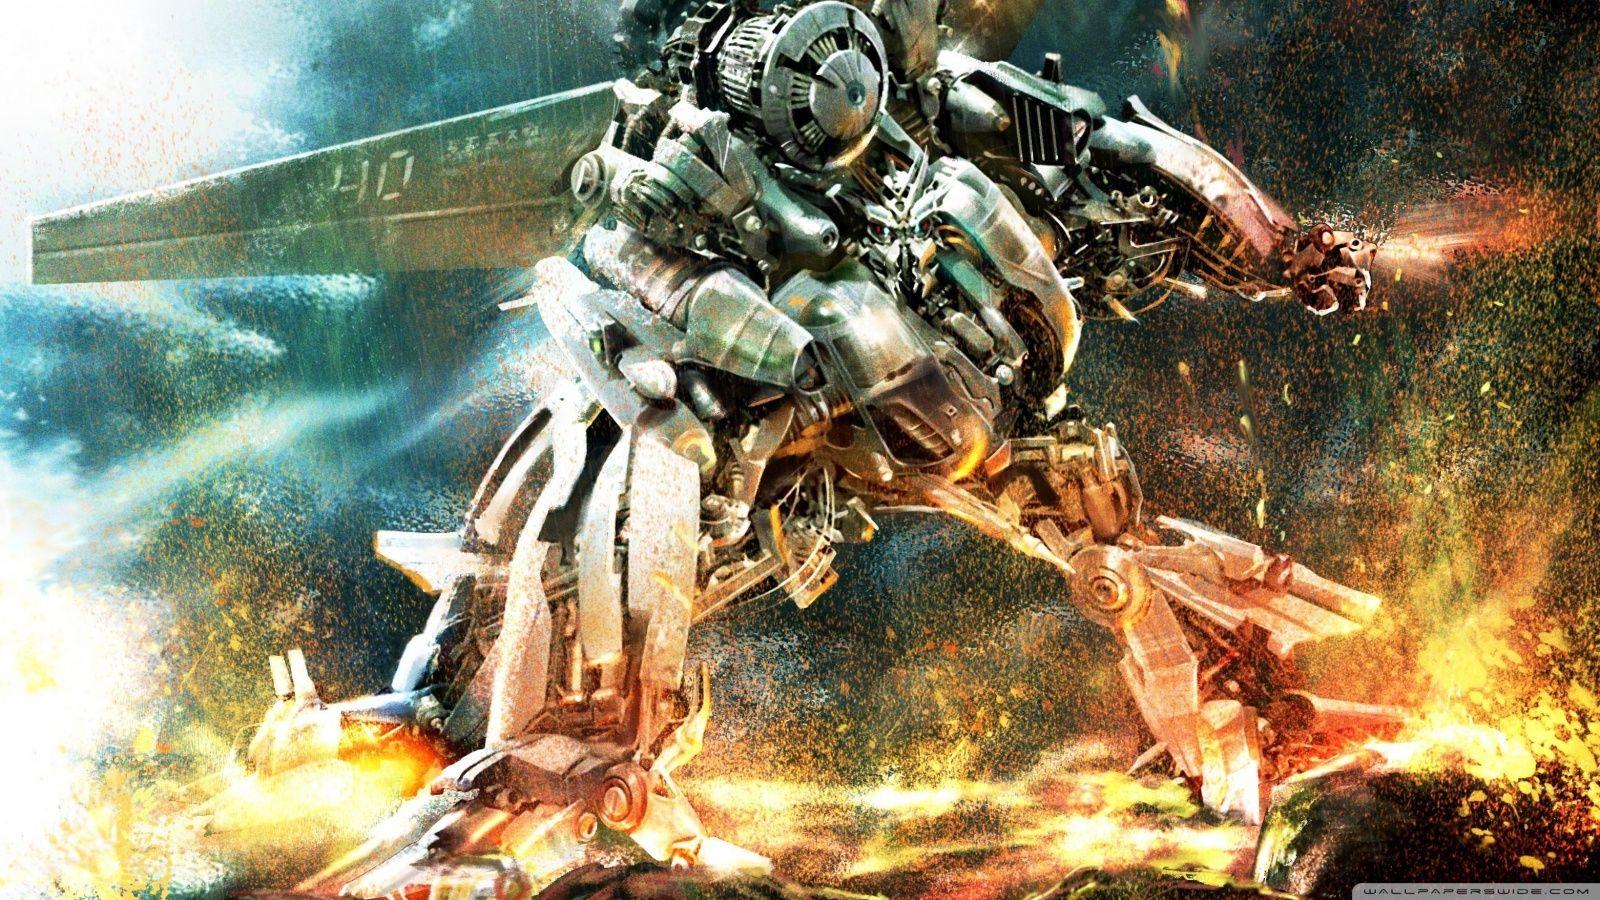 Transformers Robot War HD desktop wallpaper, High Definition